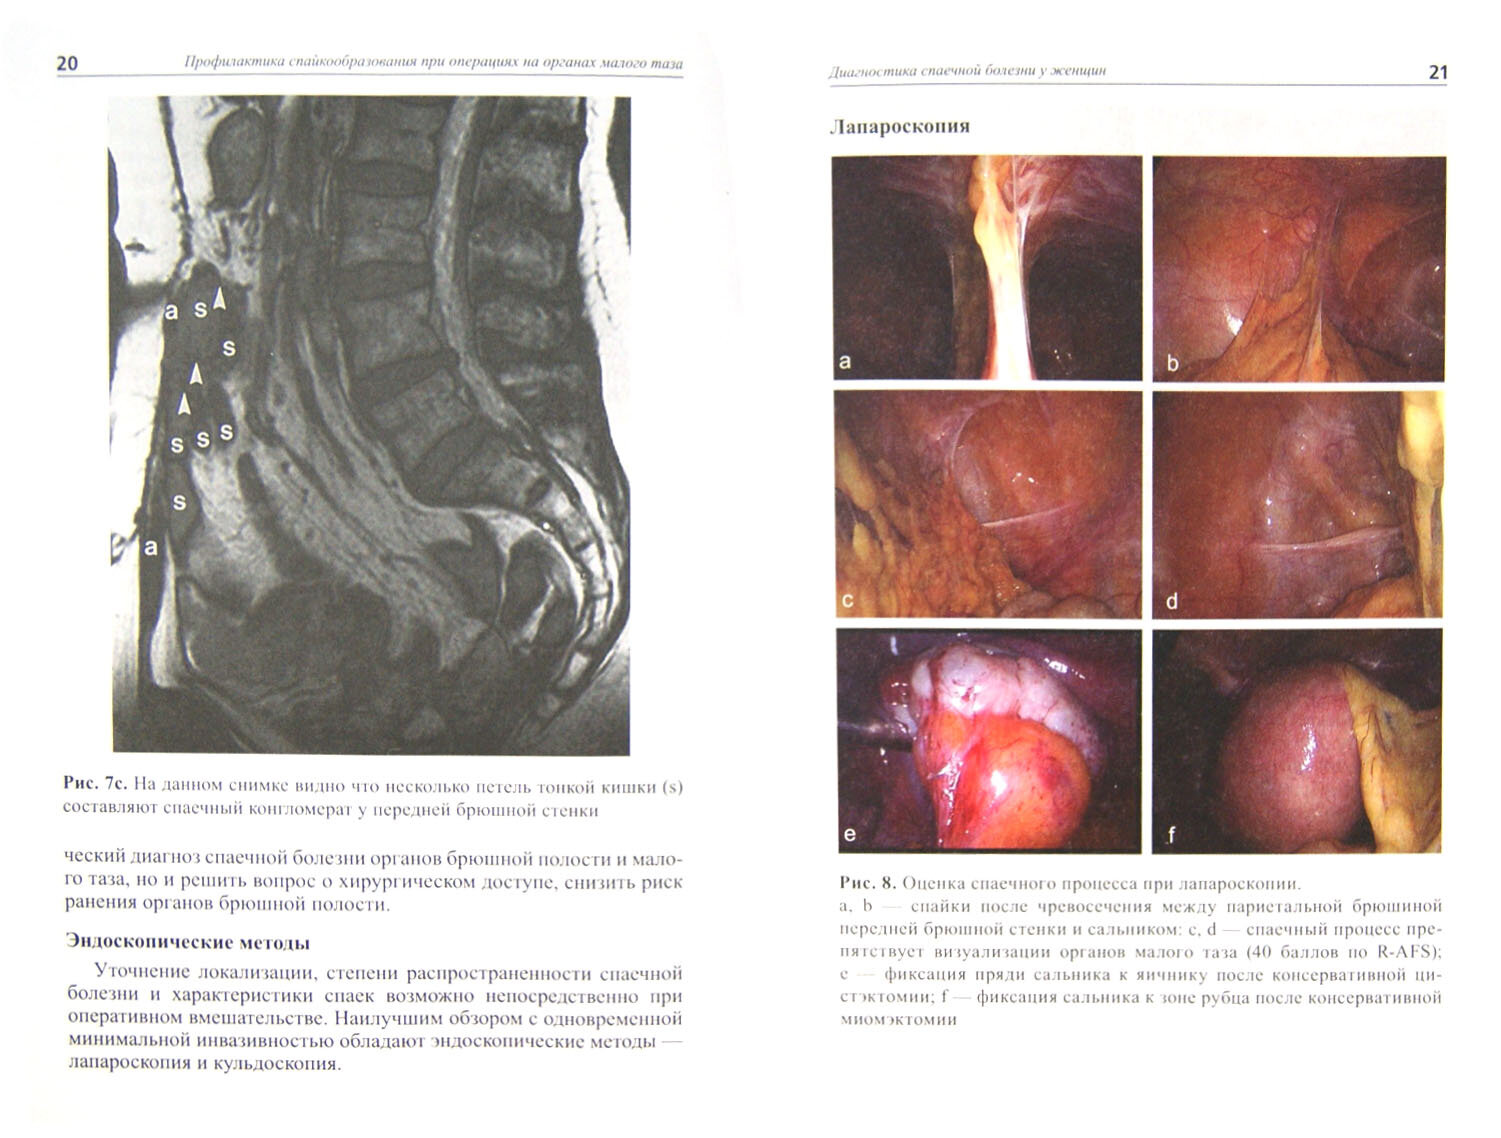 Профилактика спайкообразования при операциях на органах малого таза - фото №2